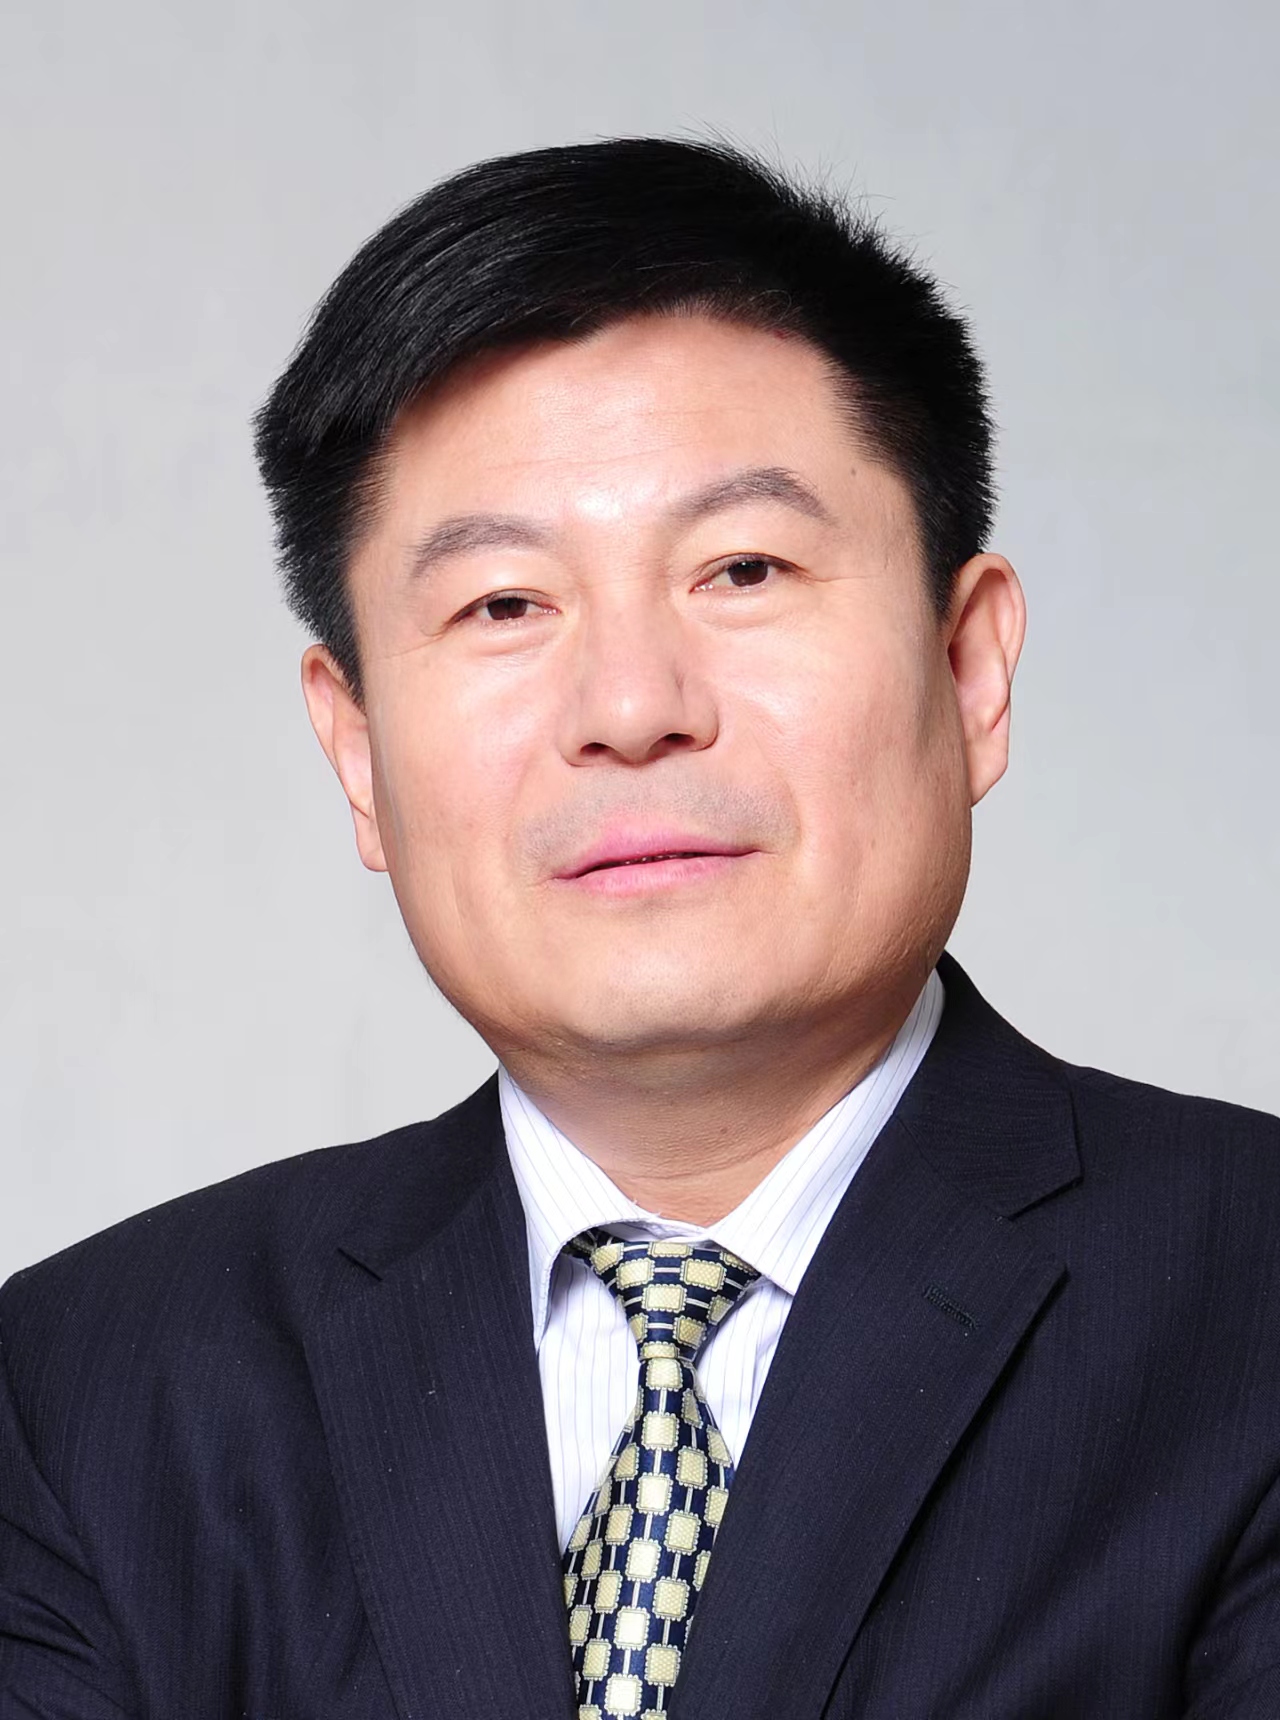 张福仁教授入选全球前2%顶尖科学家榜单